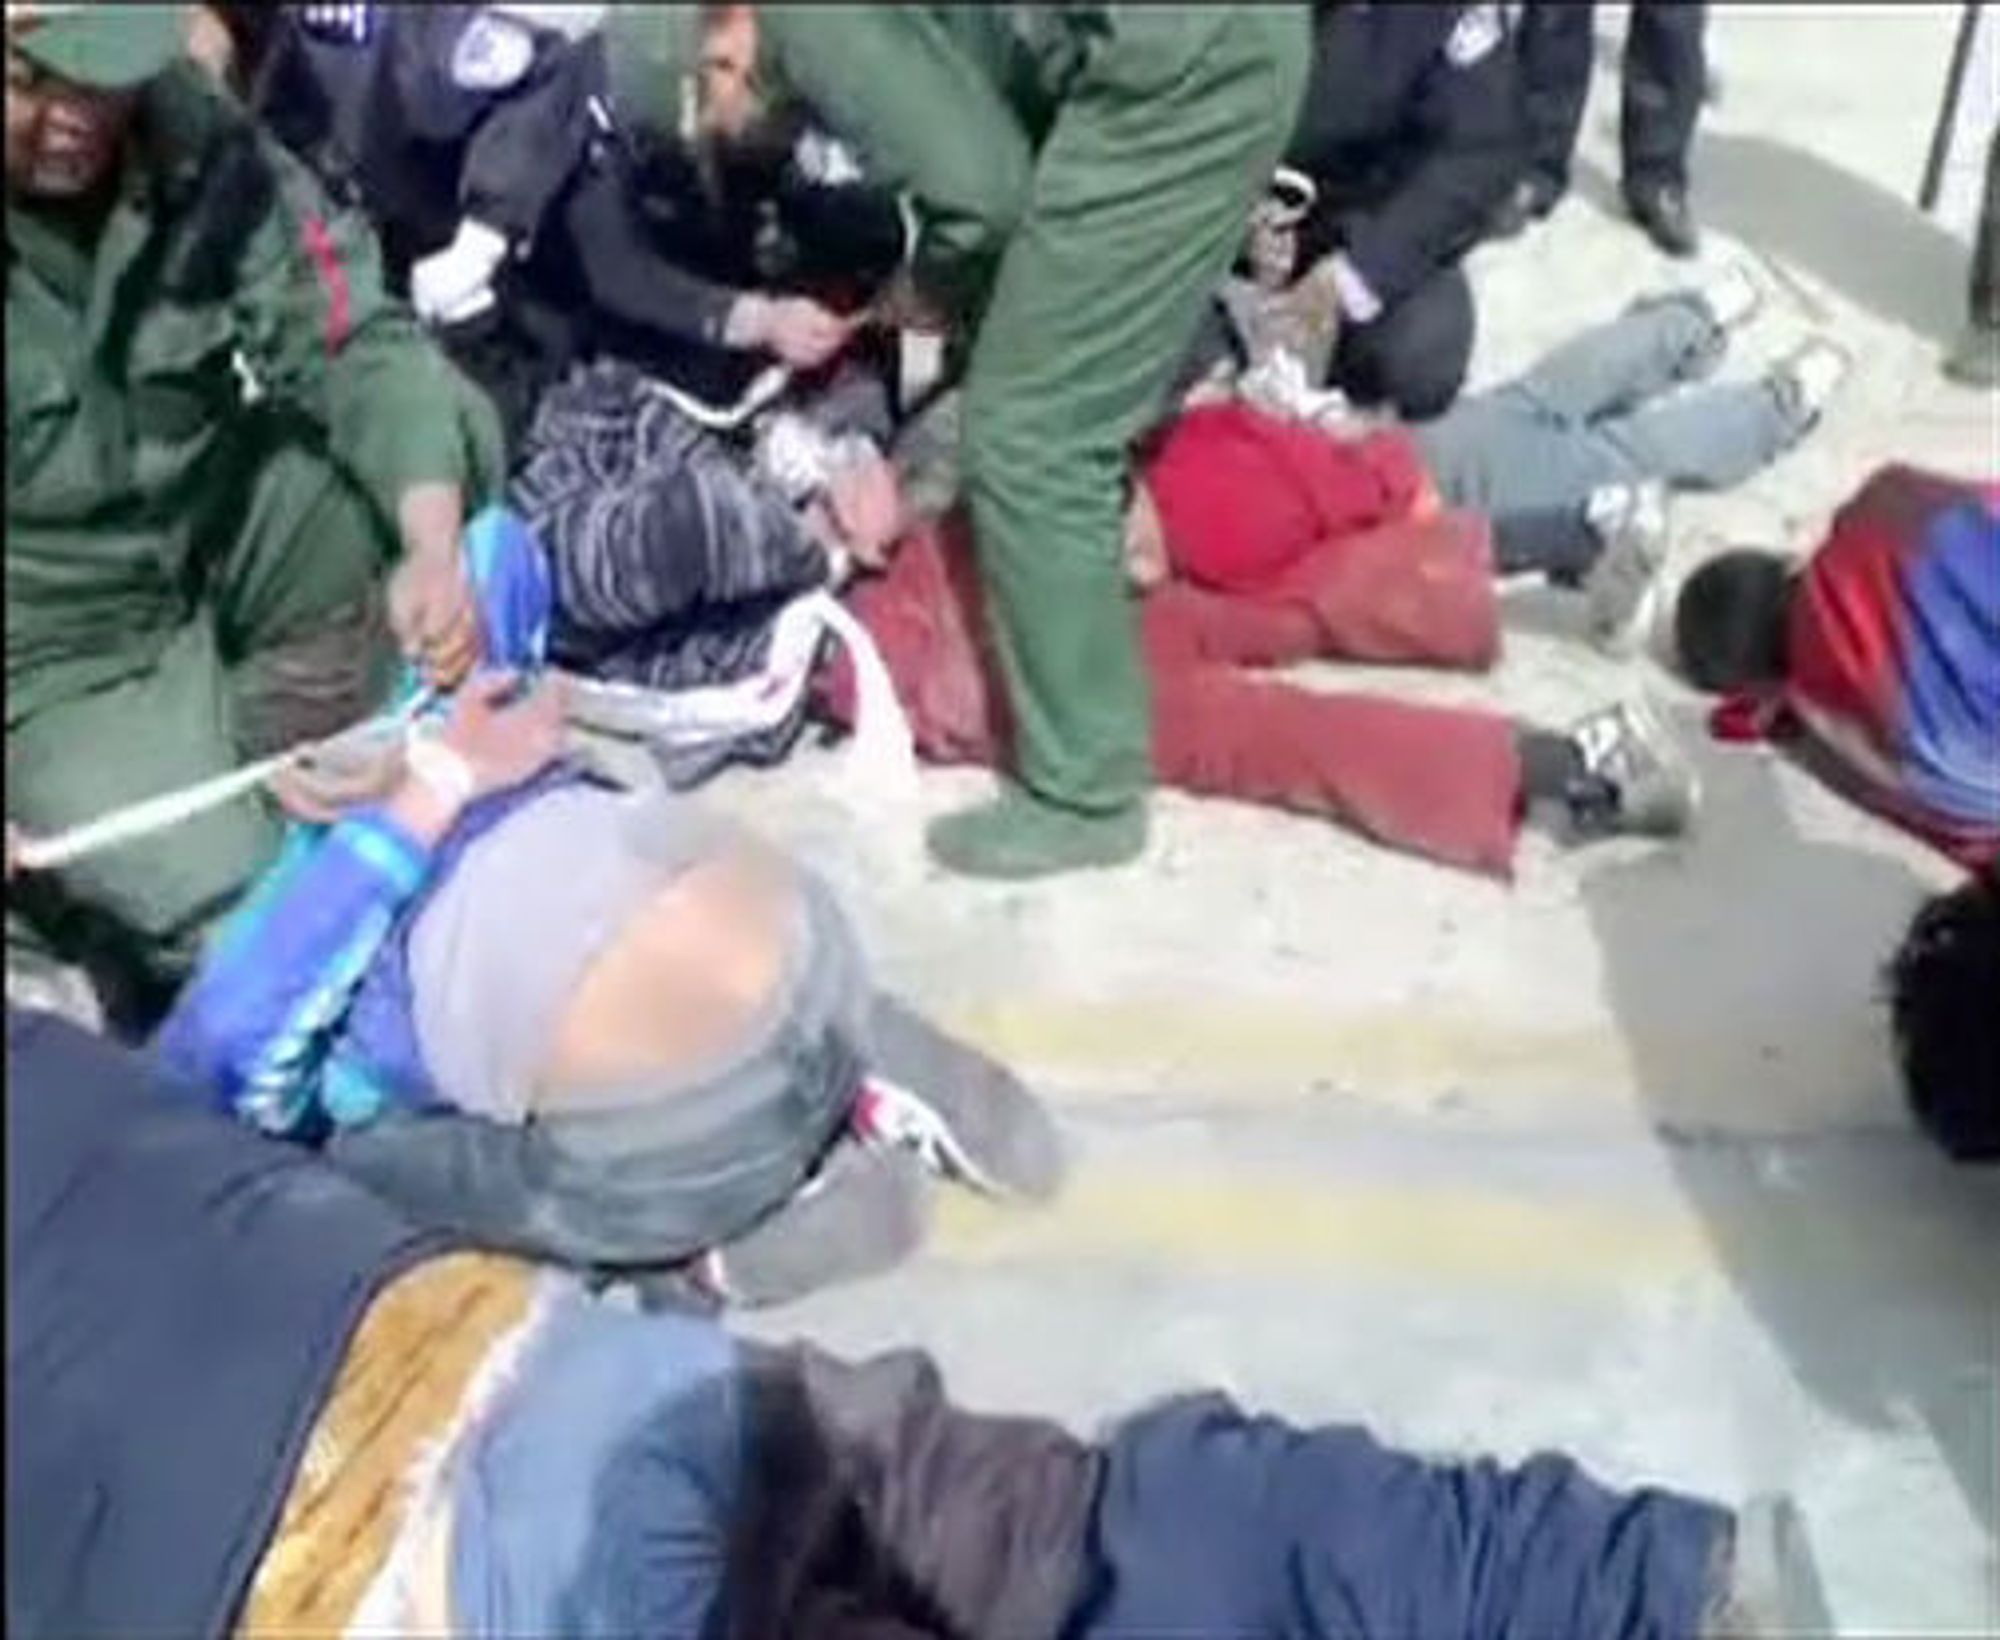 Den tibetanske eksilregjeringen har lagt ut videoer som skal vise mishandling av demonstranter i Tibets hovedstad Lhasa.